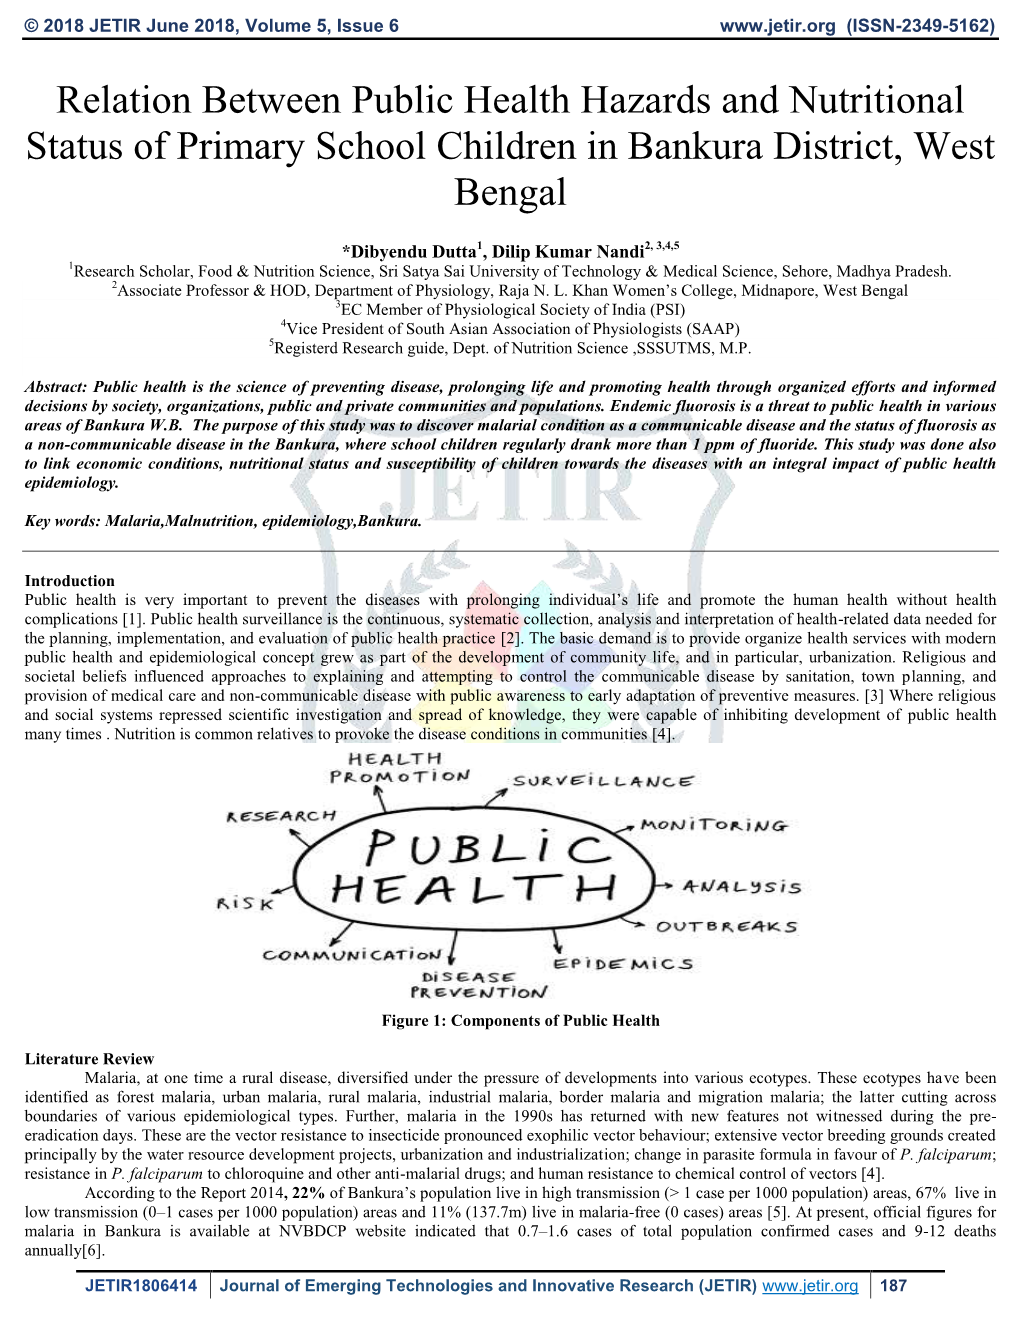 Relation Between Public Health Hazards and Nutritional Status of Primary School Children in Bankura District, West Bengal